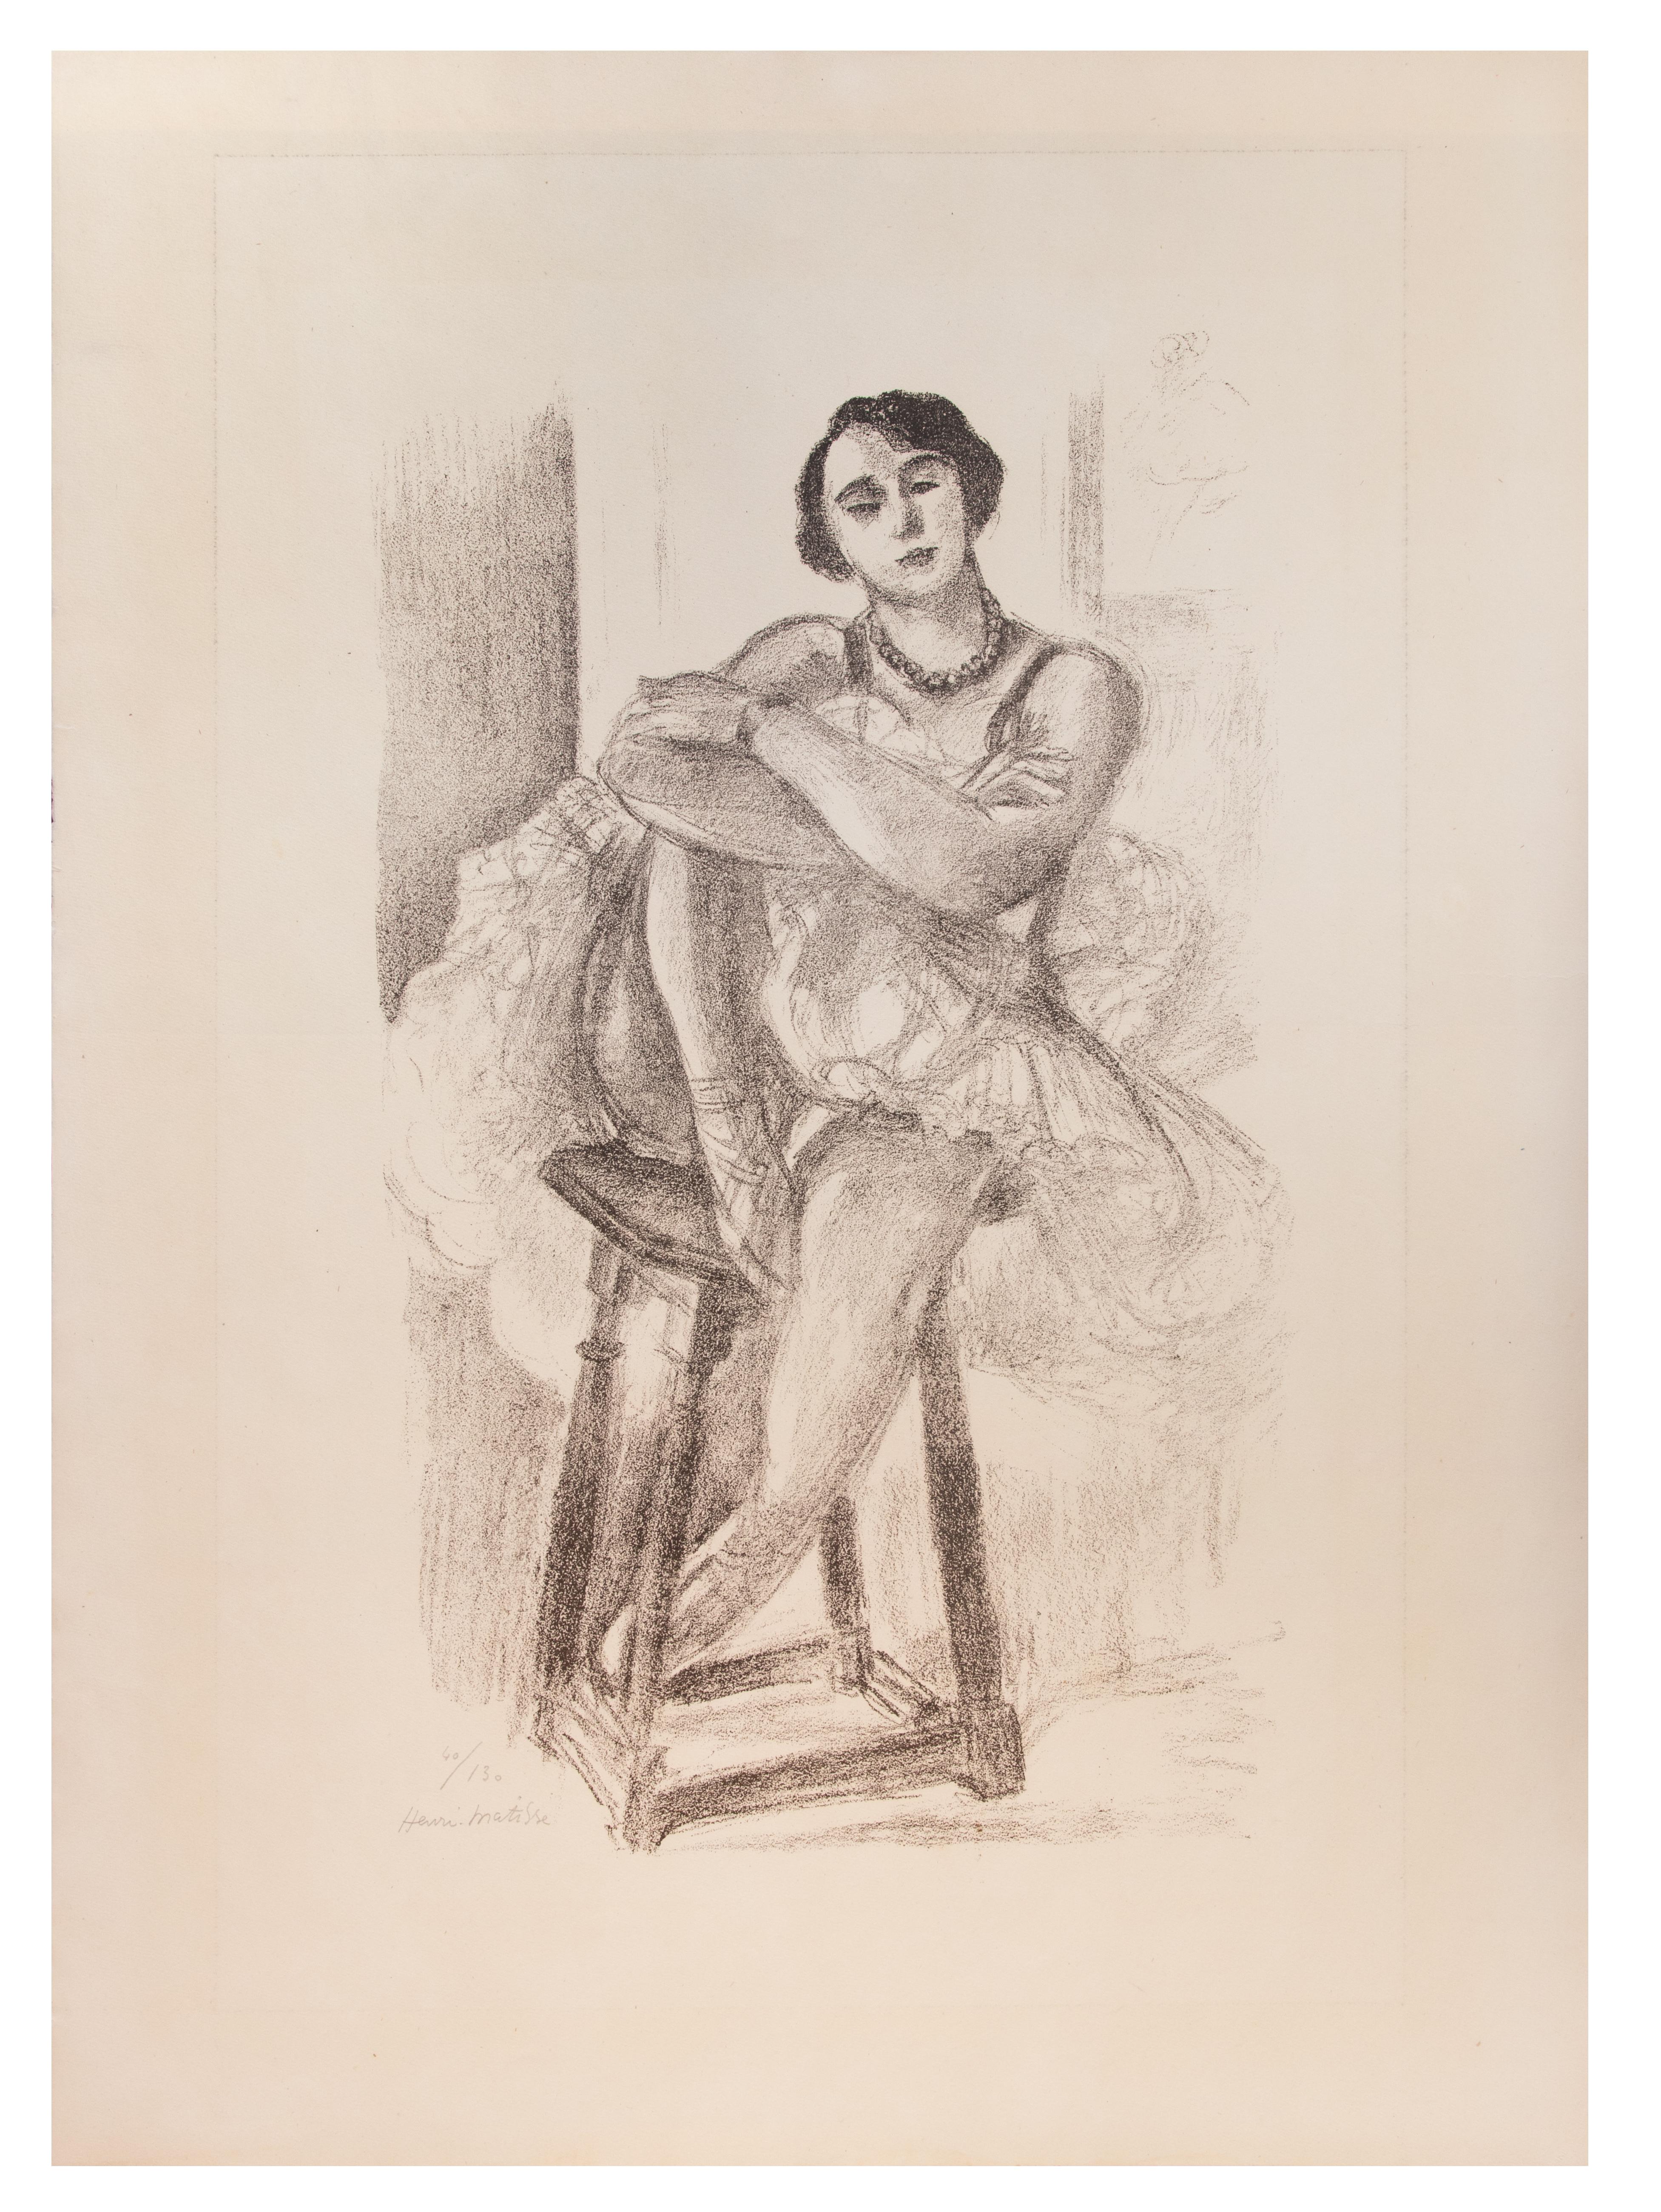 Henri Matisse Figurative Print - La Danseuse sur un Tabouret - Lithograph by Henri matisse - 1927